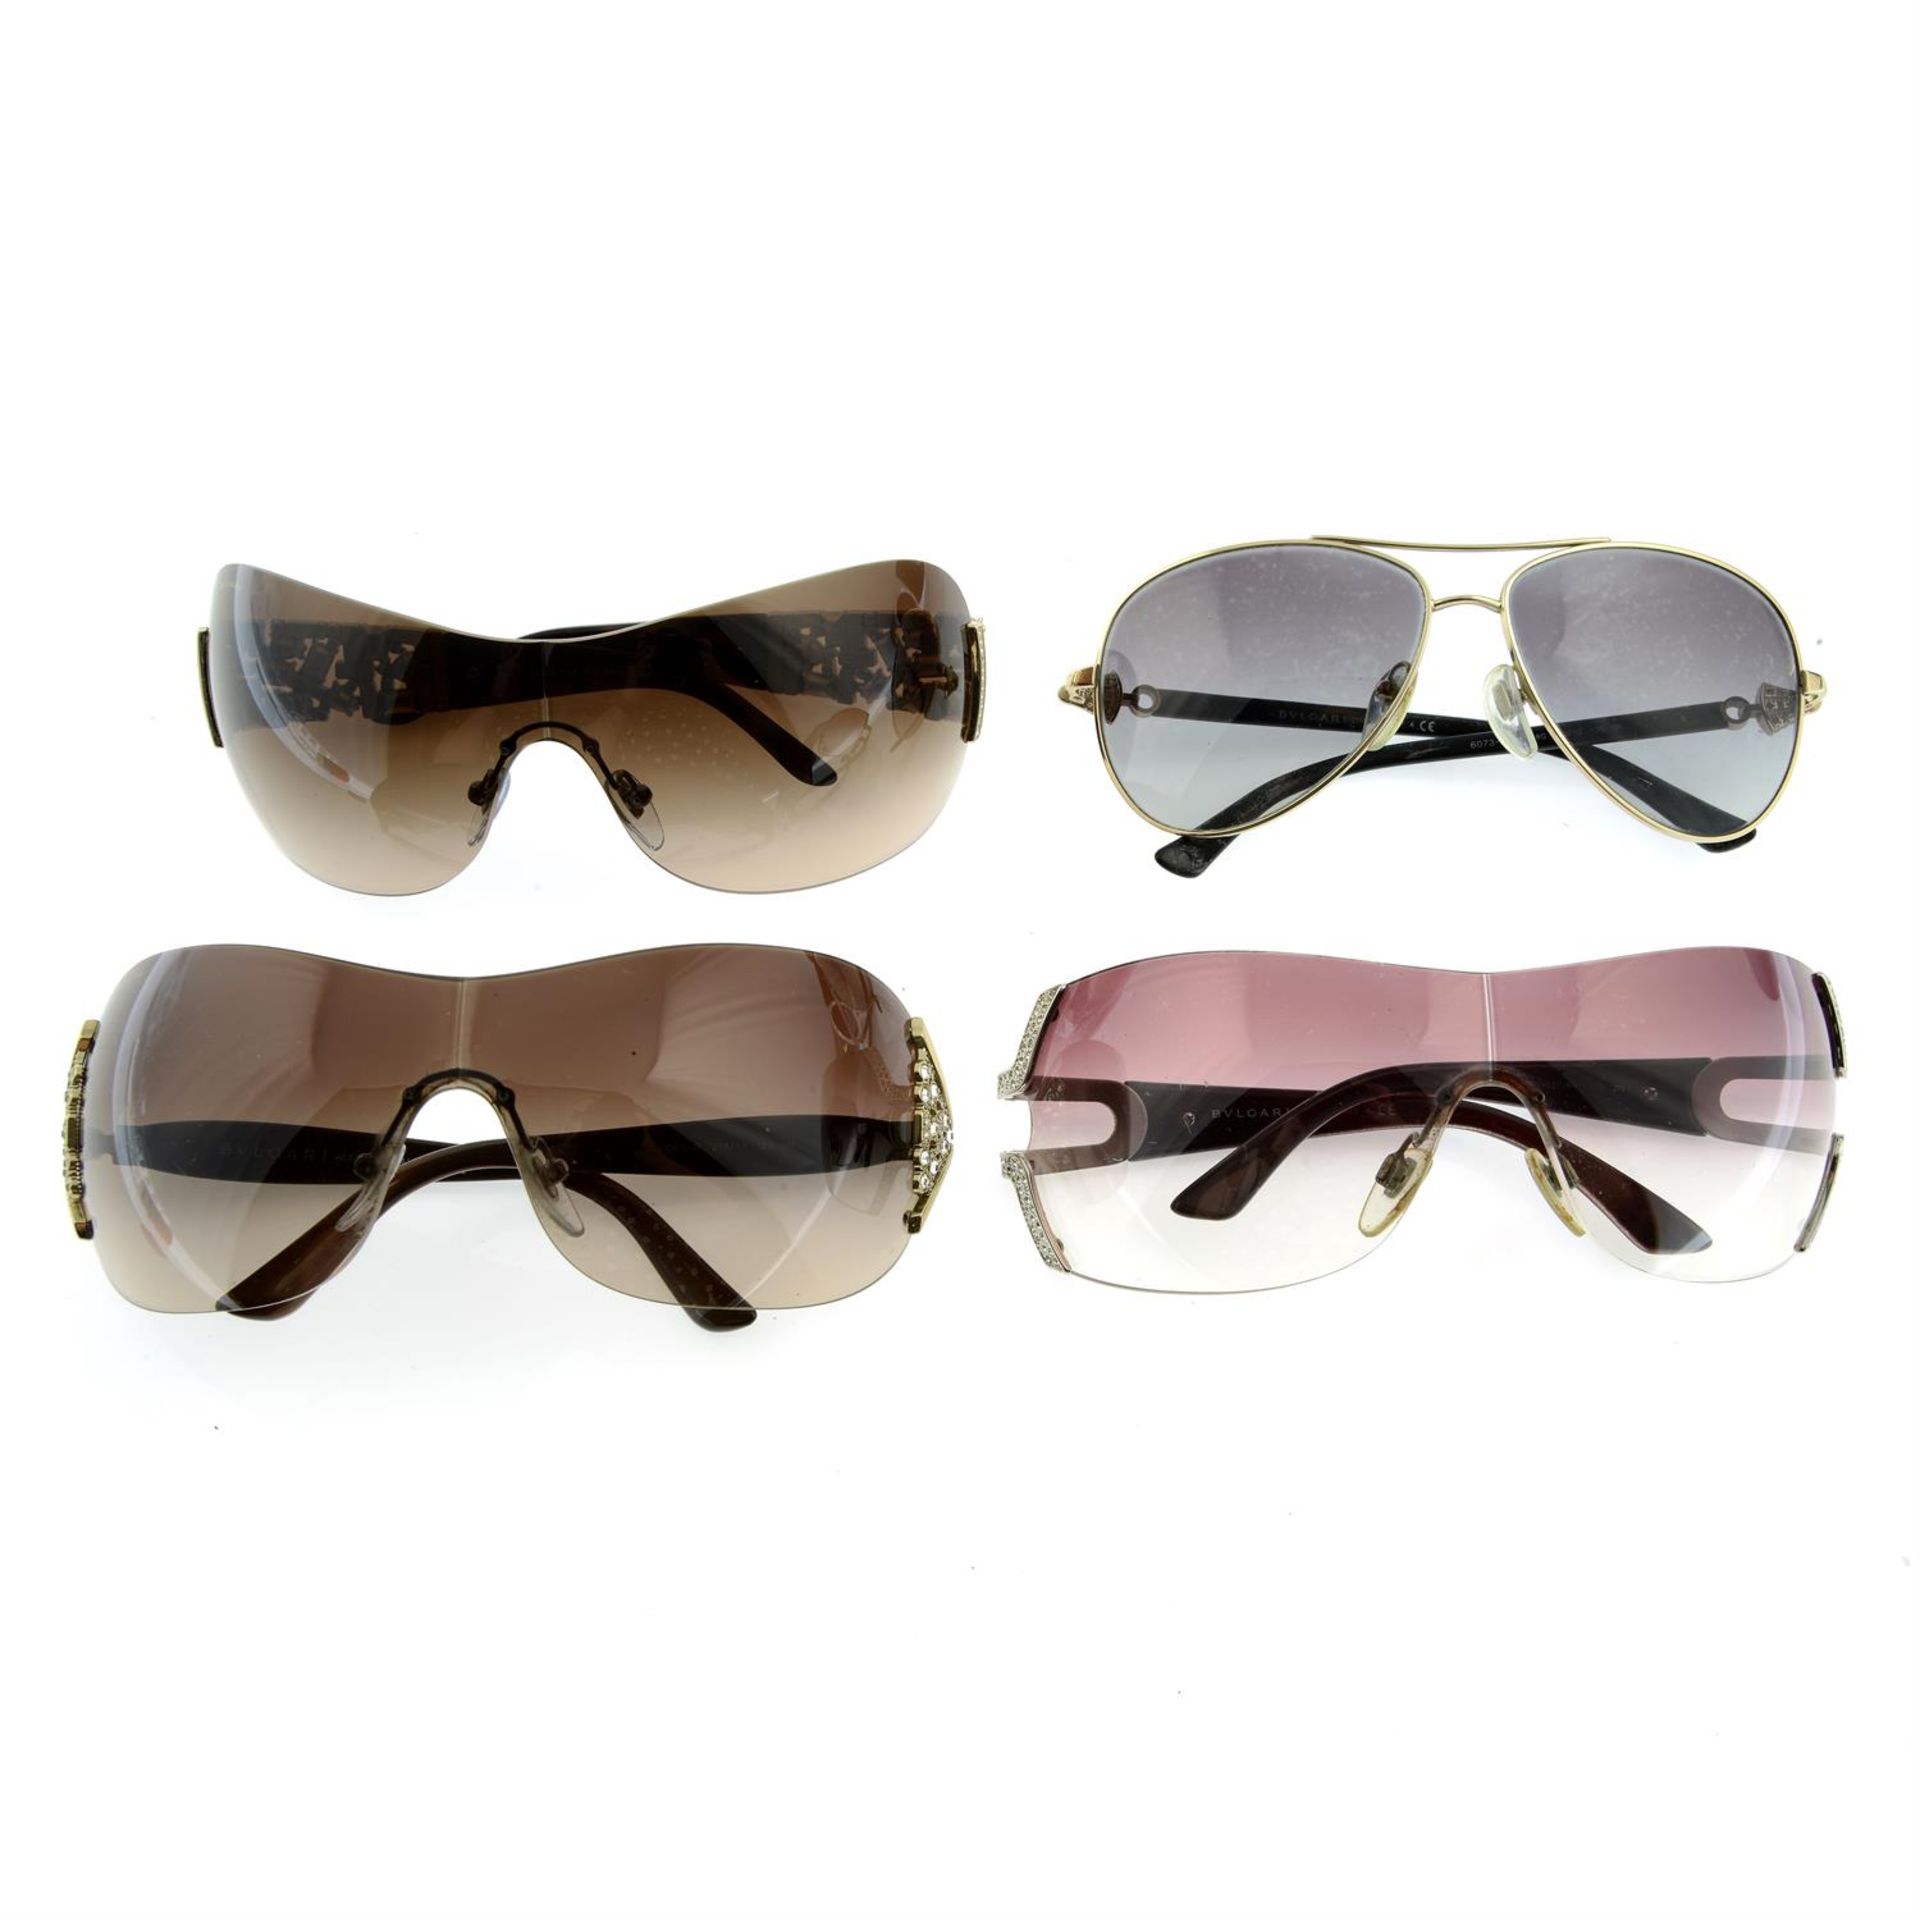 BULGARI - four pairs of sunglasses.